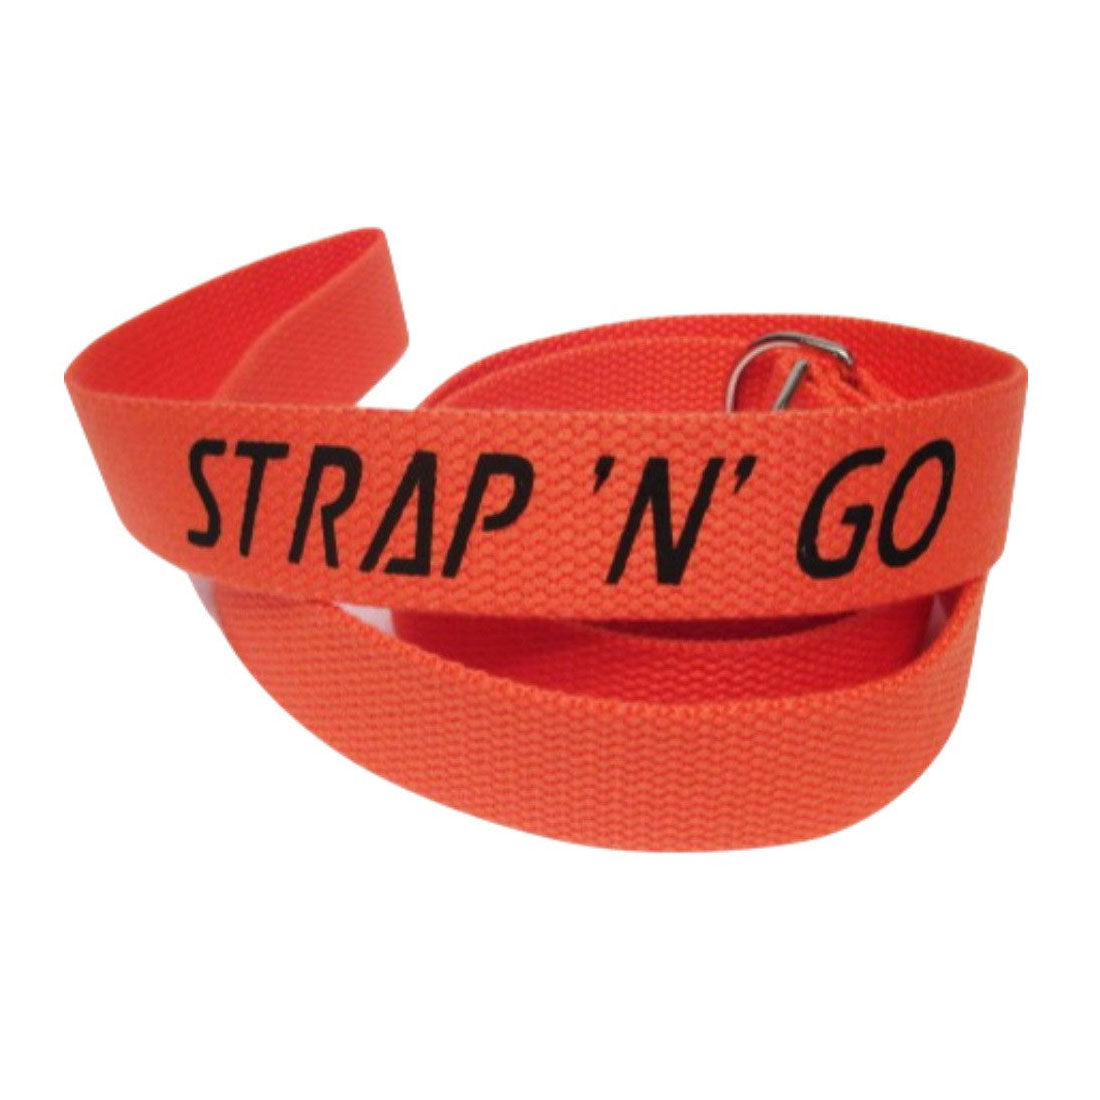 Strap N Go Skate Noose/Leash - Solid Colours Orange Roller Skate Accessories